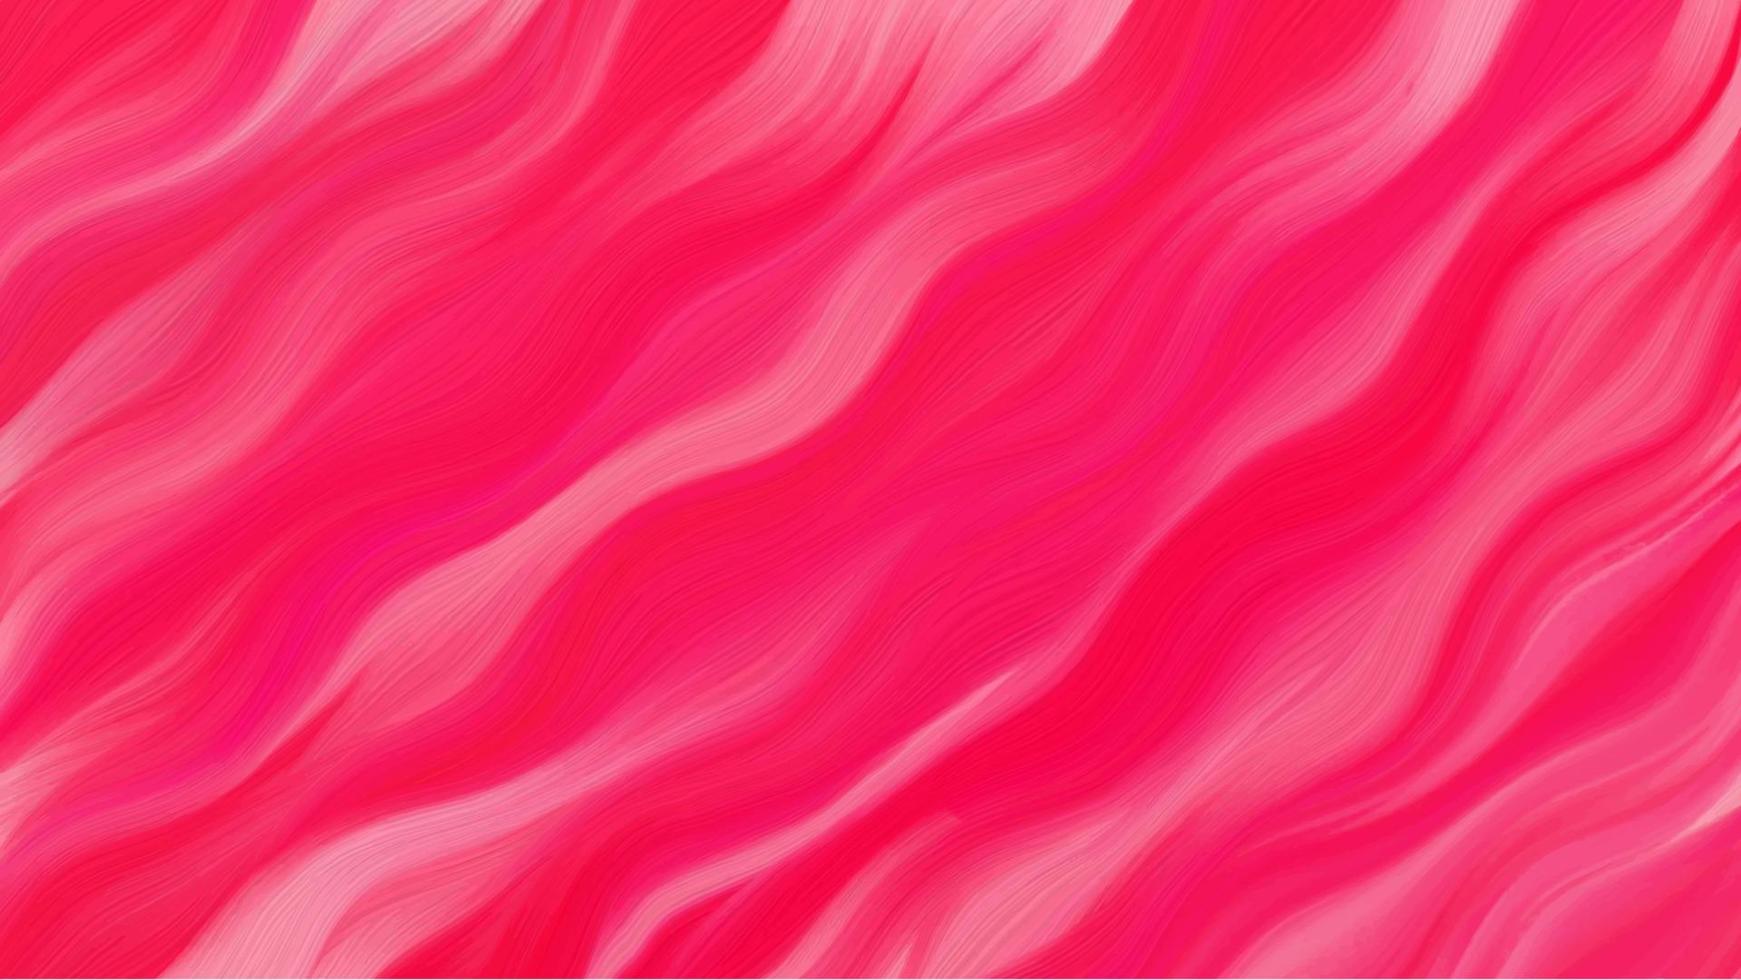 fondo para el sitio. portada de la primera página del sitio. imagen brillante en tonos rosas. ilustración abstracta vectorial. vector